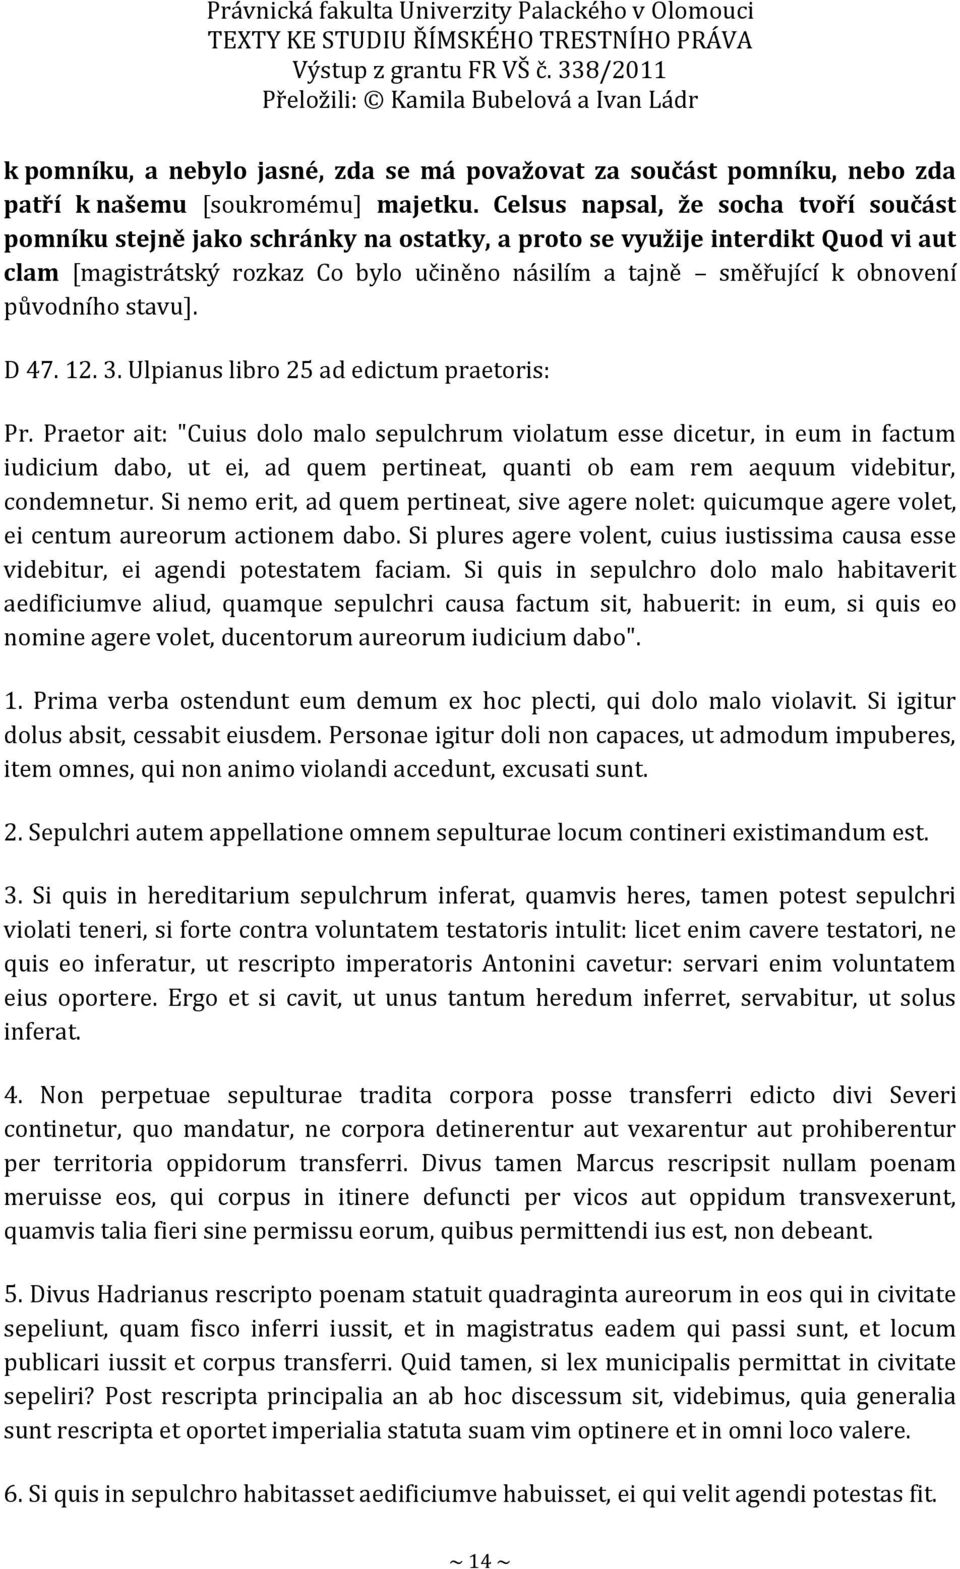 původního stavu]. D 47. 12. 3. Ulpianus libro 25 ad edictum praetoris: Pr.